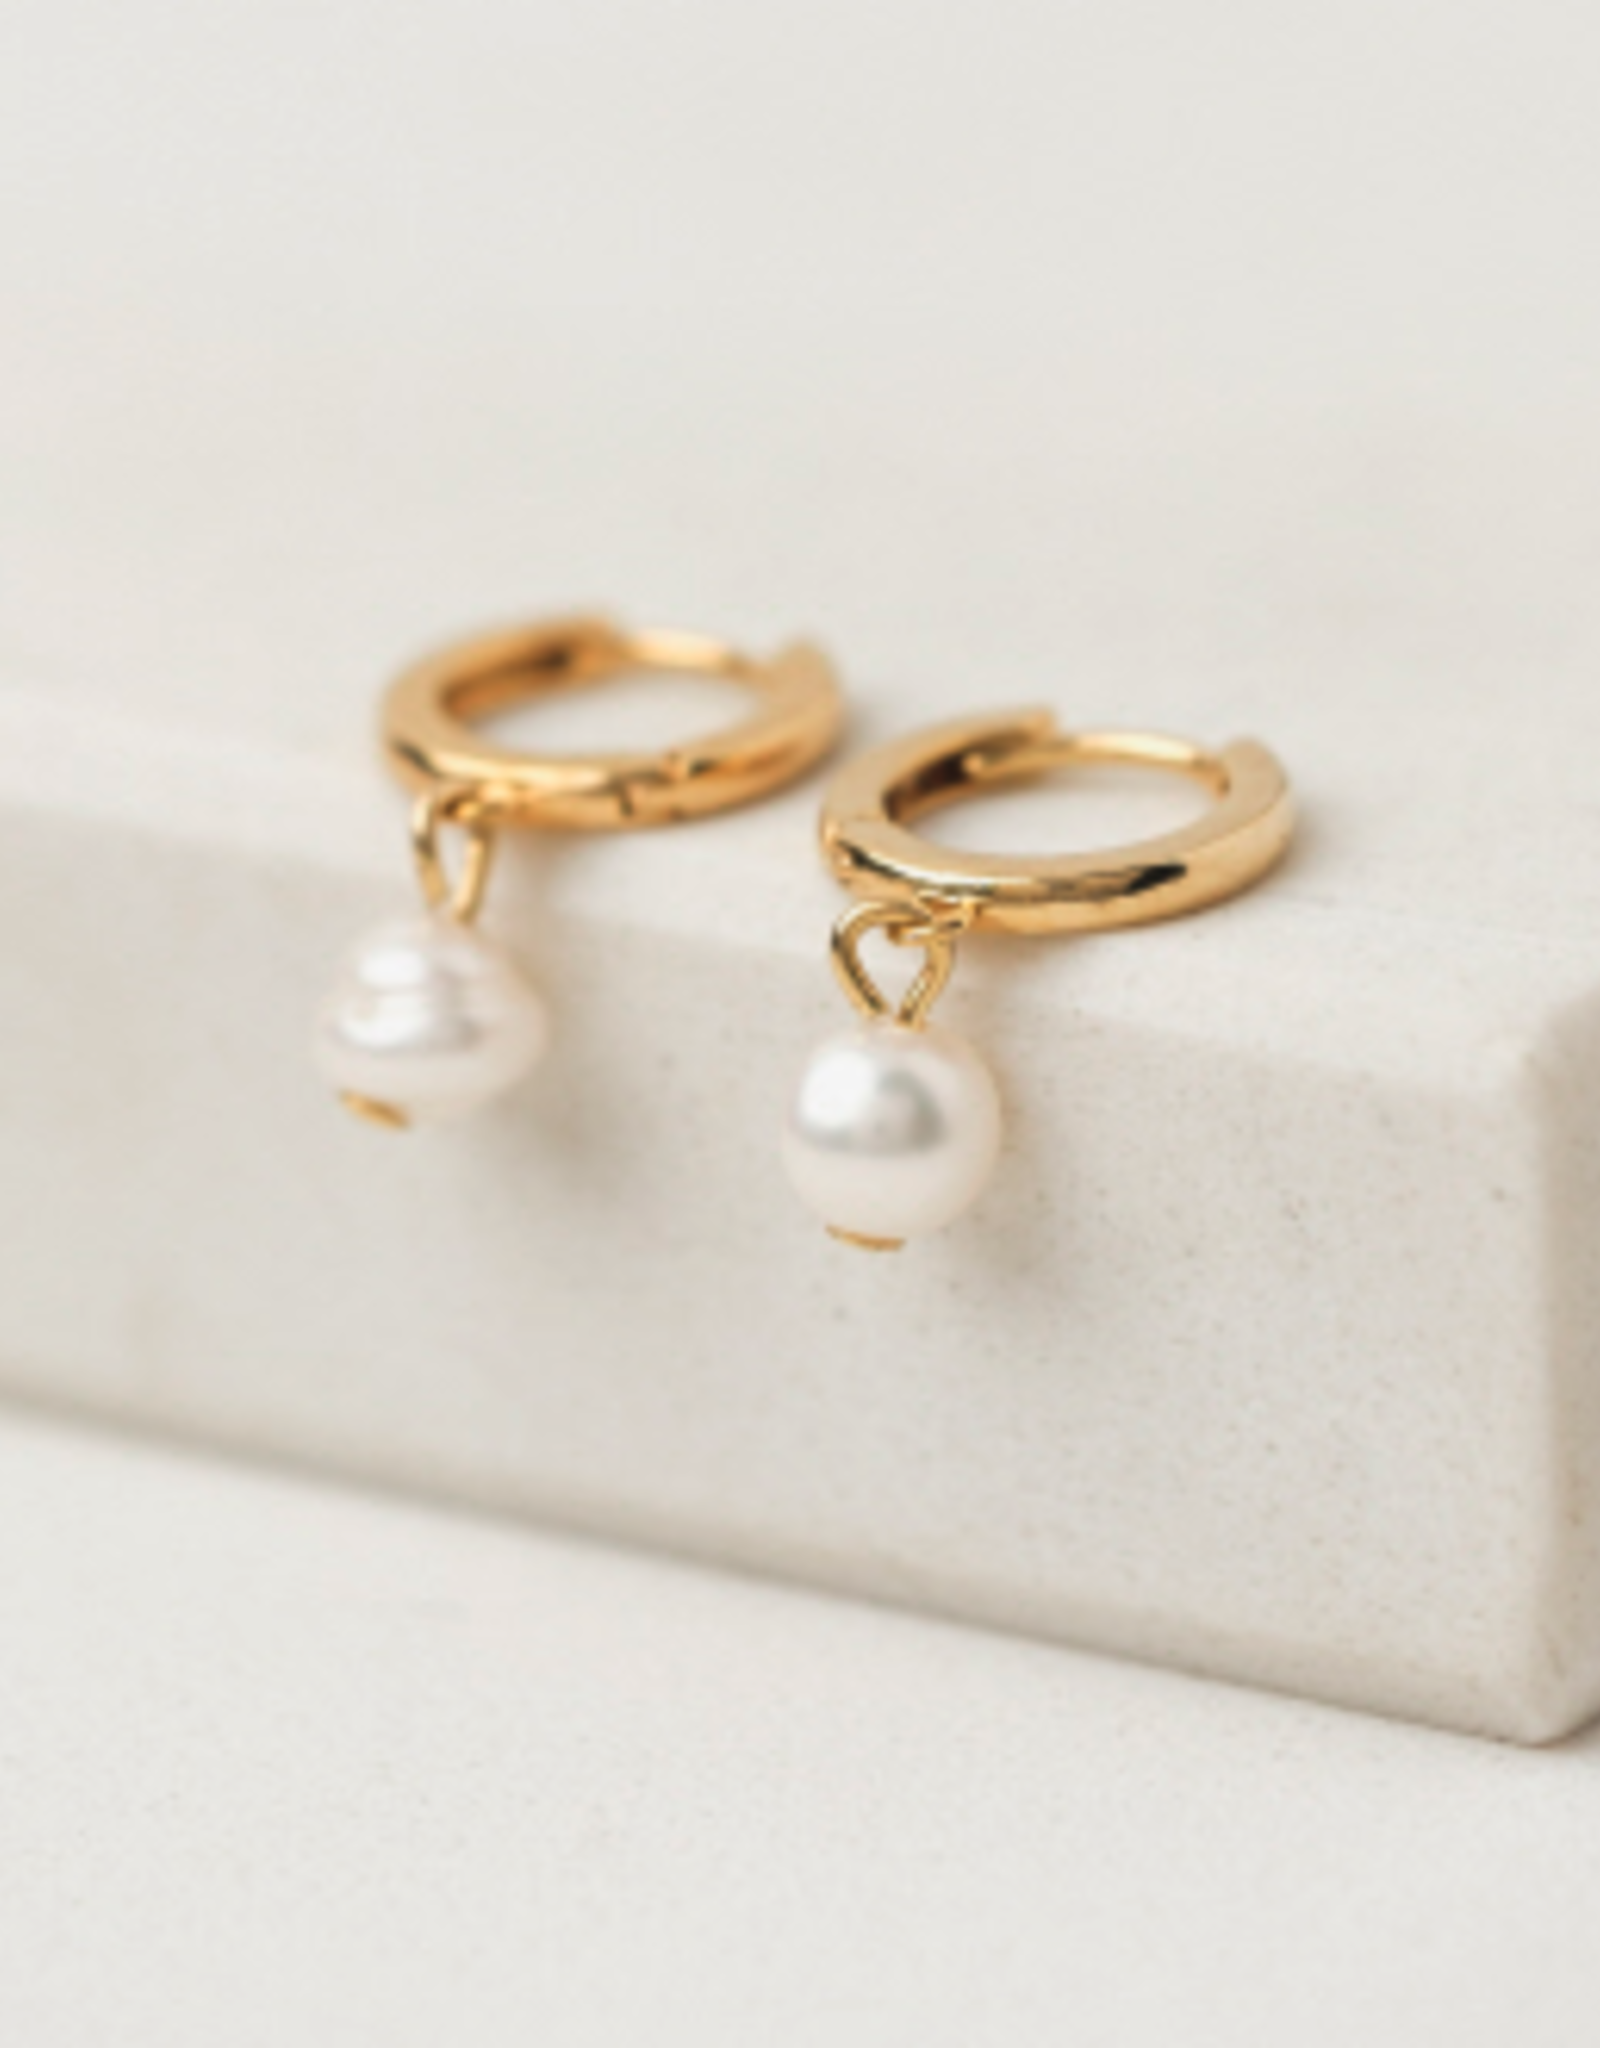 Amari Pearl Hoop Earrings - Gold